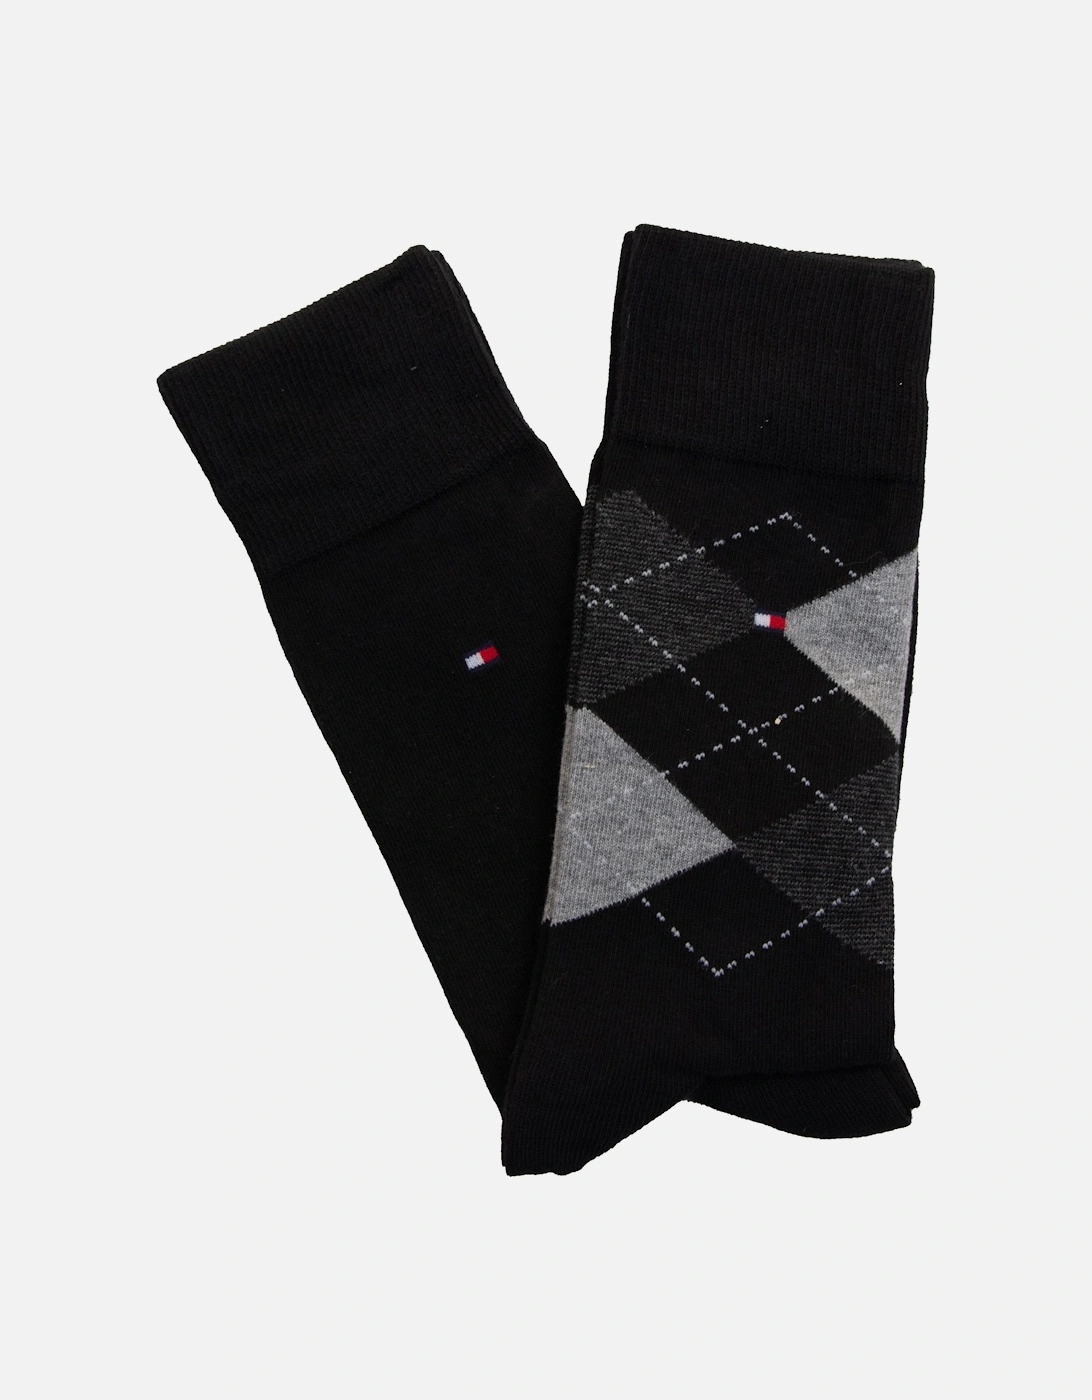 Tommy Hilfiger Mens Sock Check 2 Pack (Black), 6 of 5